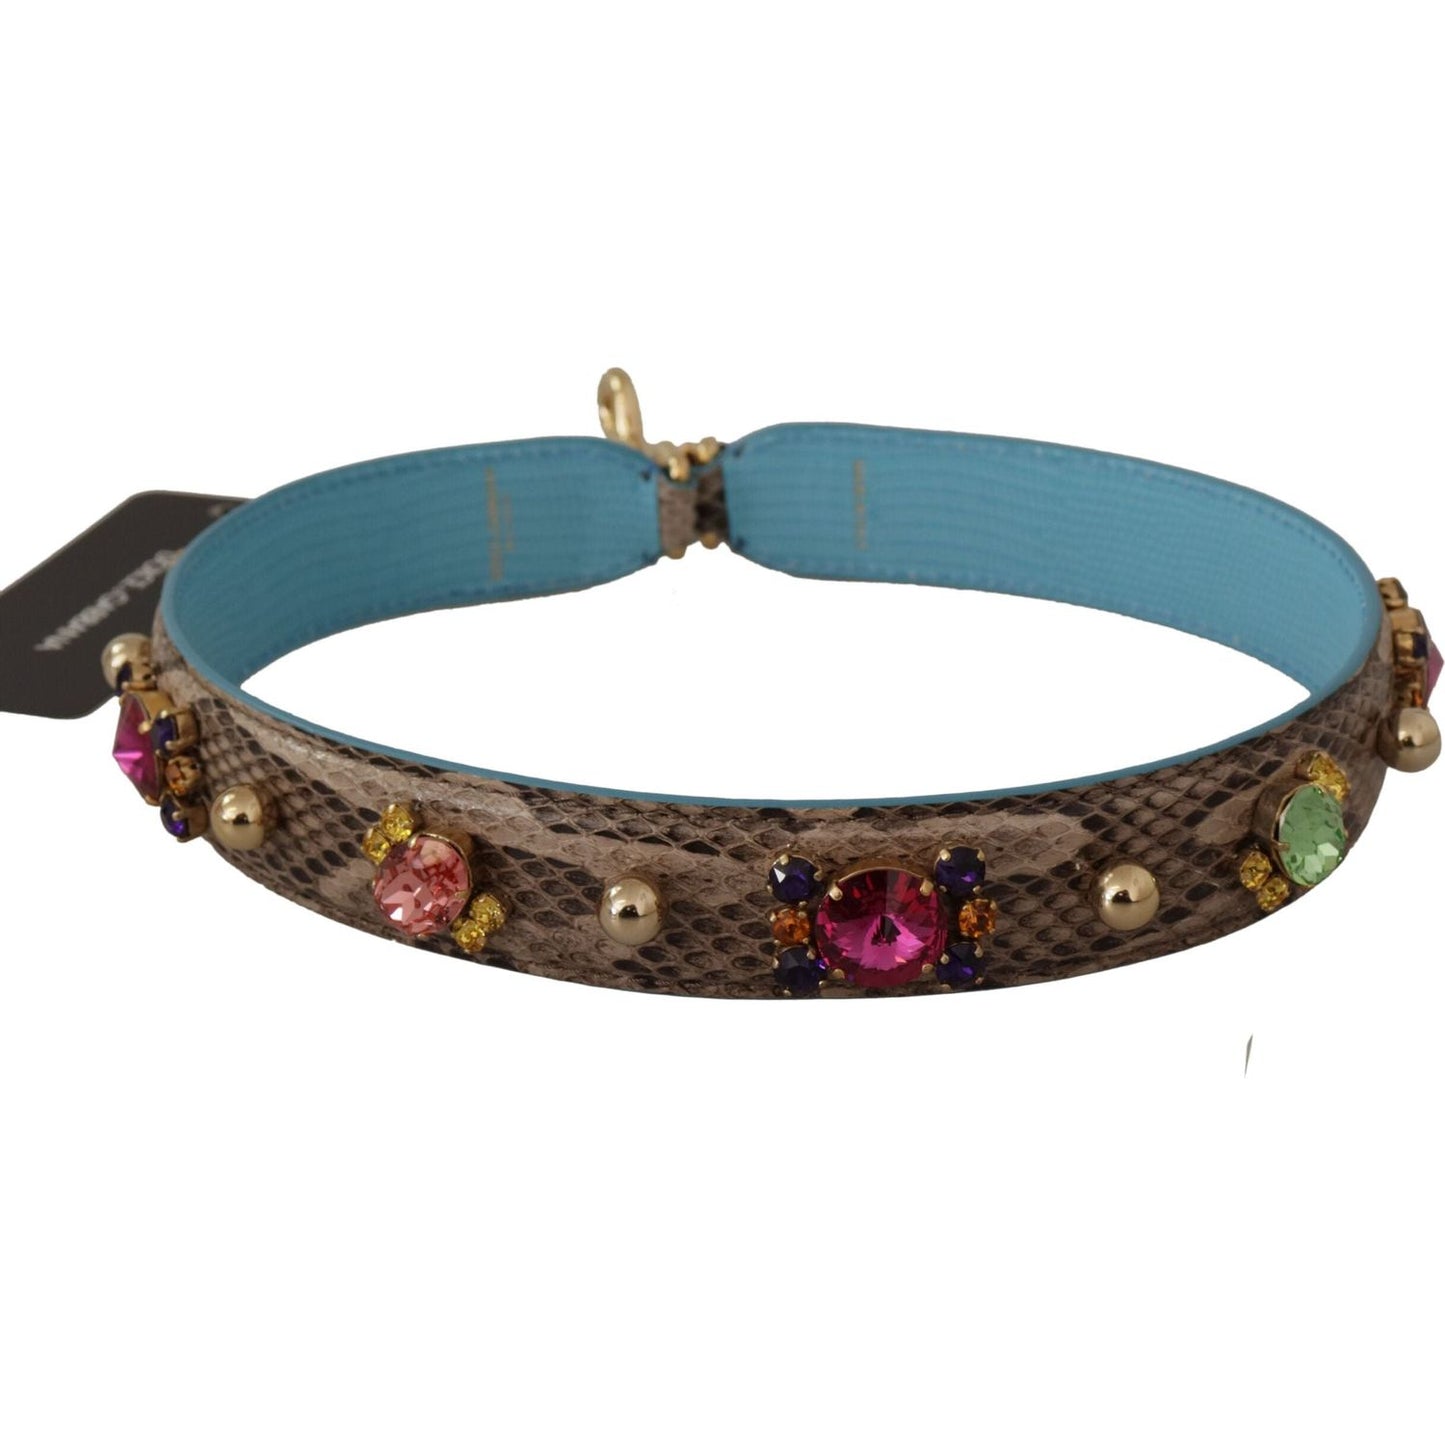 Dolce & Gabbana Elegant Python Leather Shoulder Strap Accessory brown-exotic-leather-crystals-shoulder-strap IMG_9880-1-scaled-44292c48-080.jpg